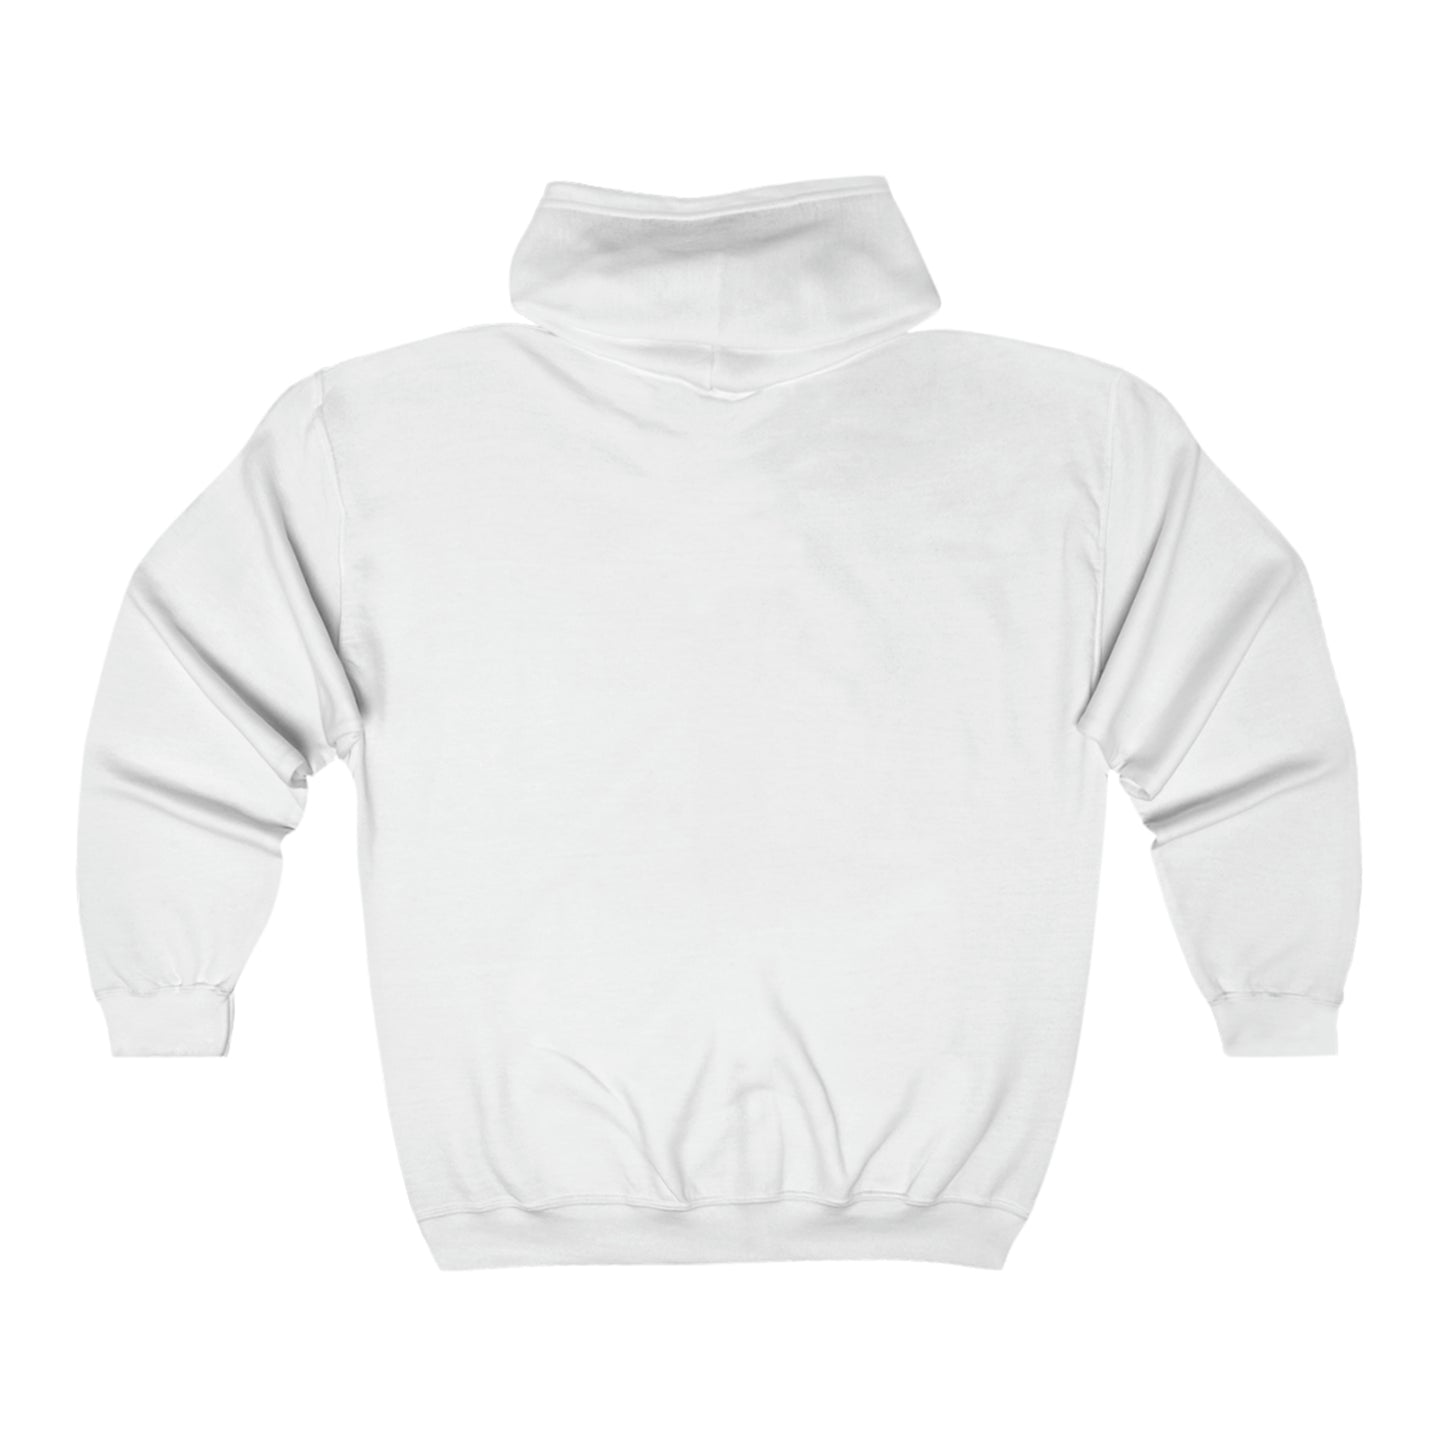 Inspire Wear Unisex Heavy Blend™ Full Zip Hooded Sweatshirt